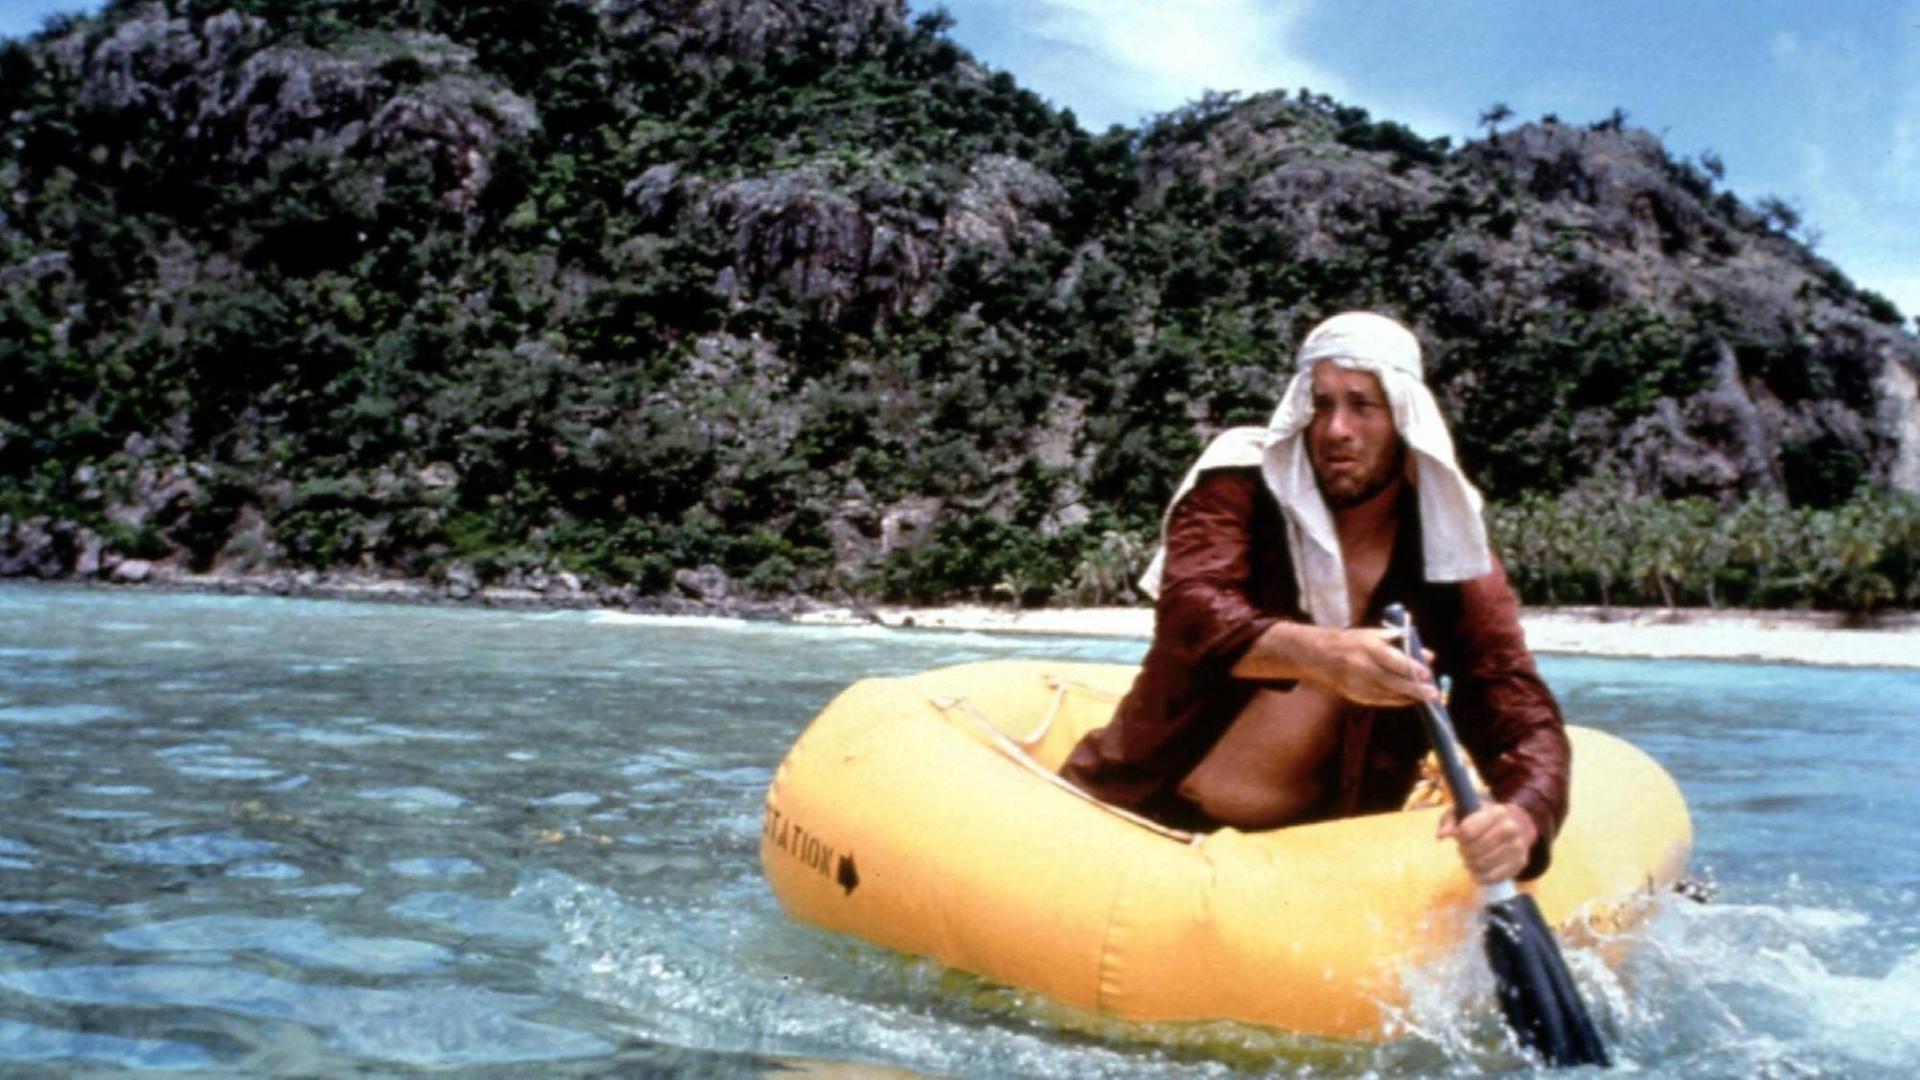 Filmstill aus dem Kinofilm Cast Away mit Tom Hanks. Das Bild zeigt einen ausgemärgelten Mann mit Turban in einem Schlauboot vor einer einsamen Insel.